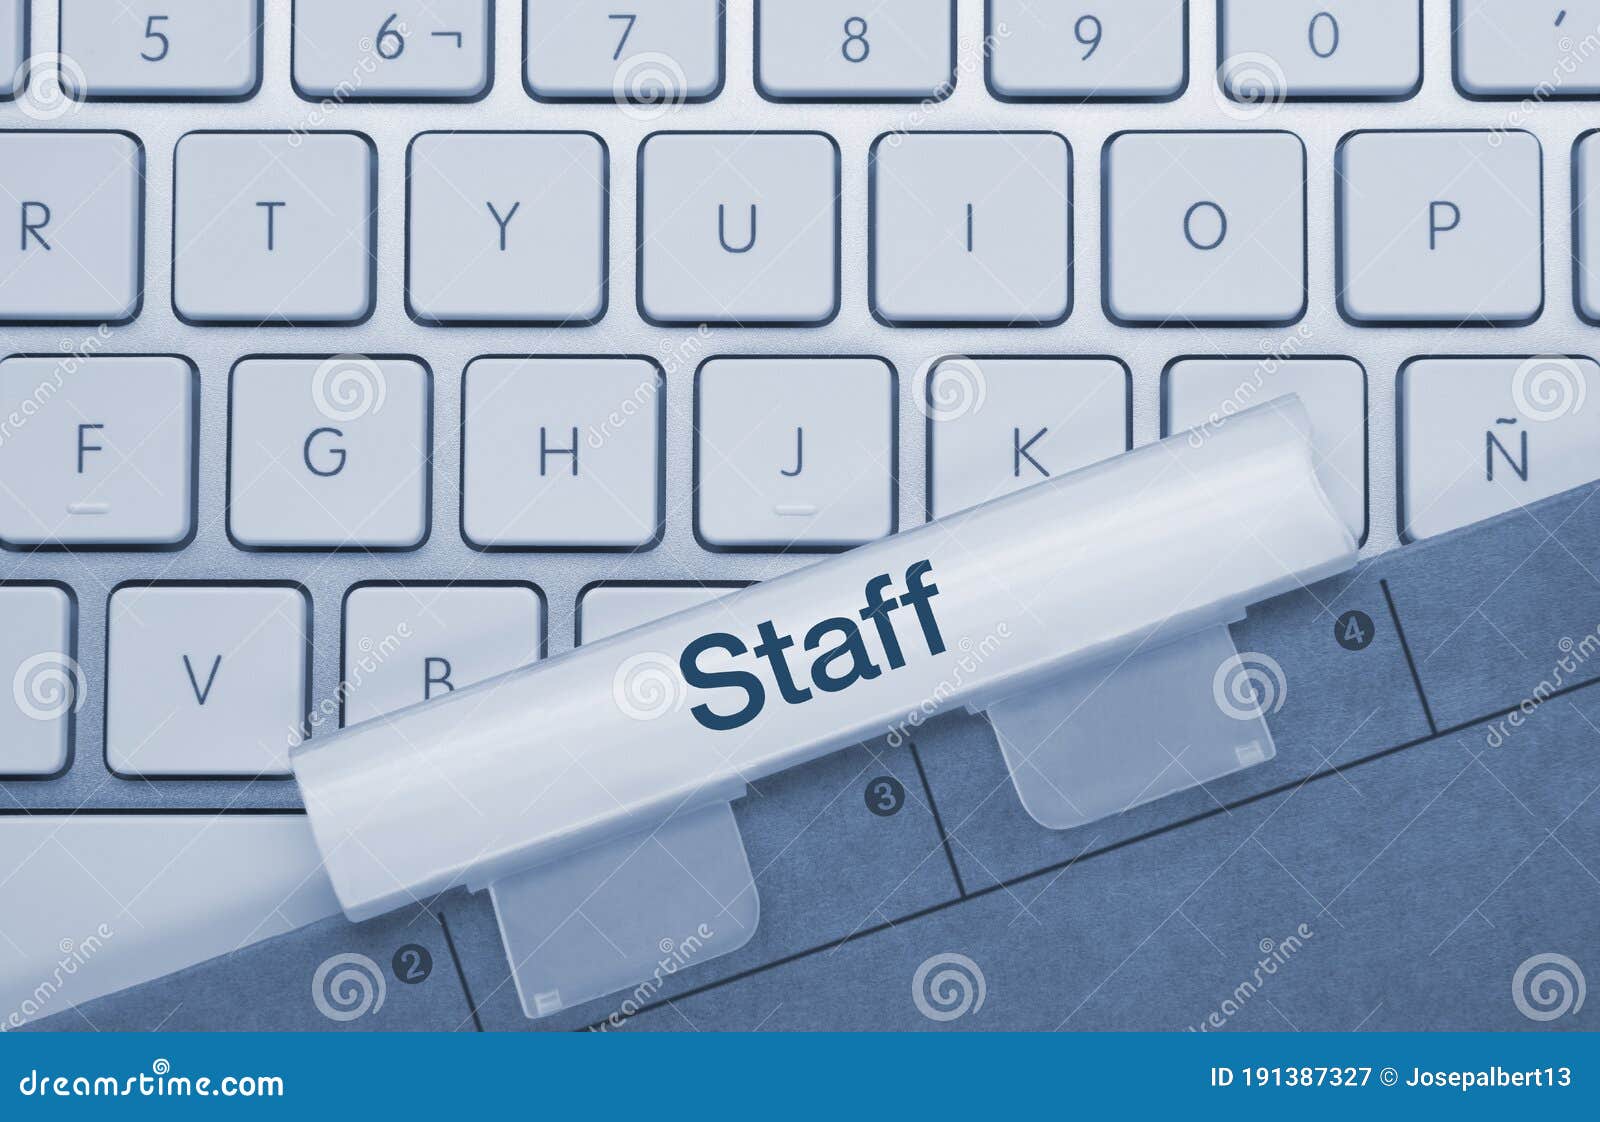 staff - inscription on blue keyboard key